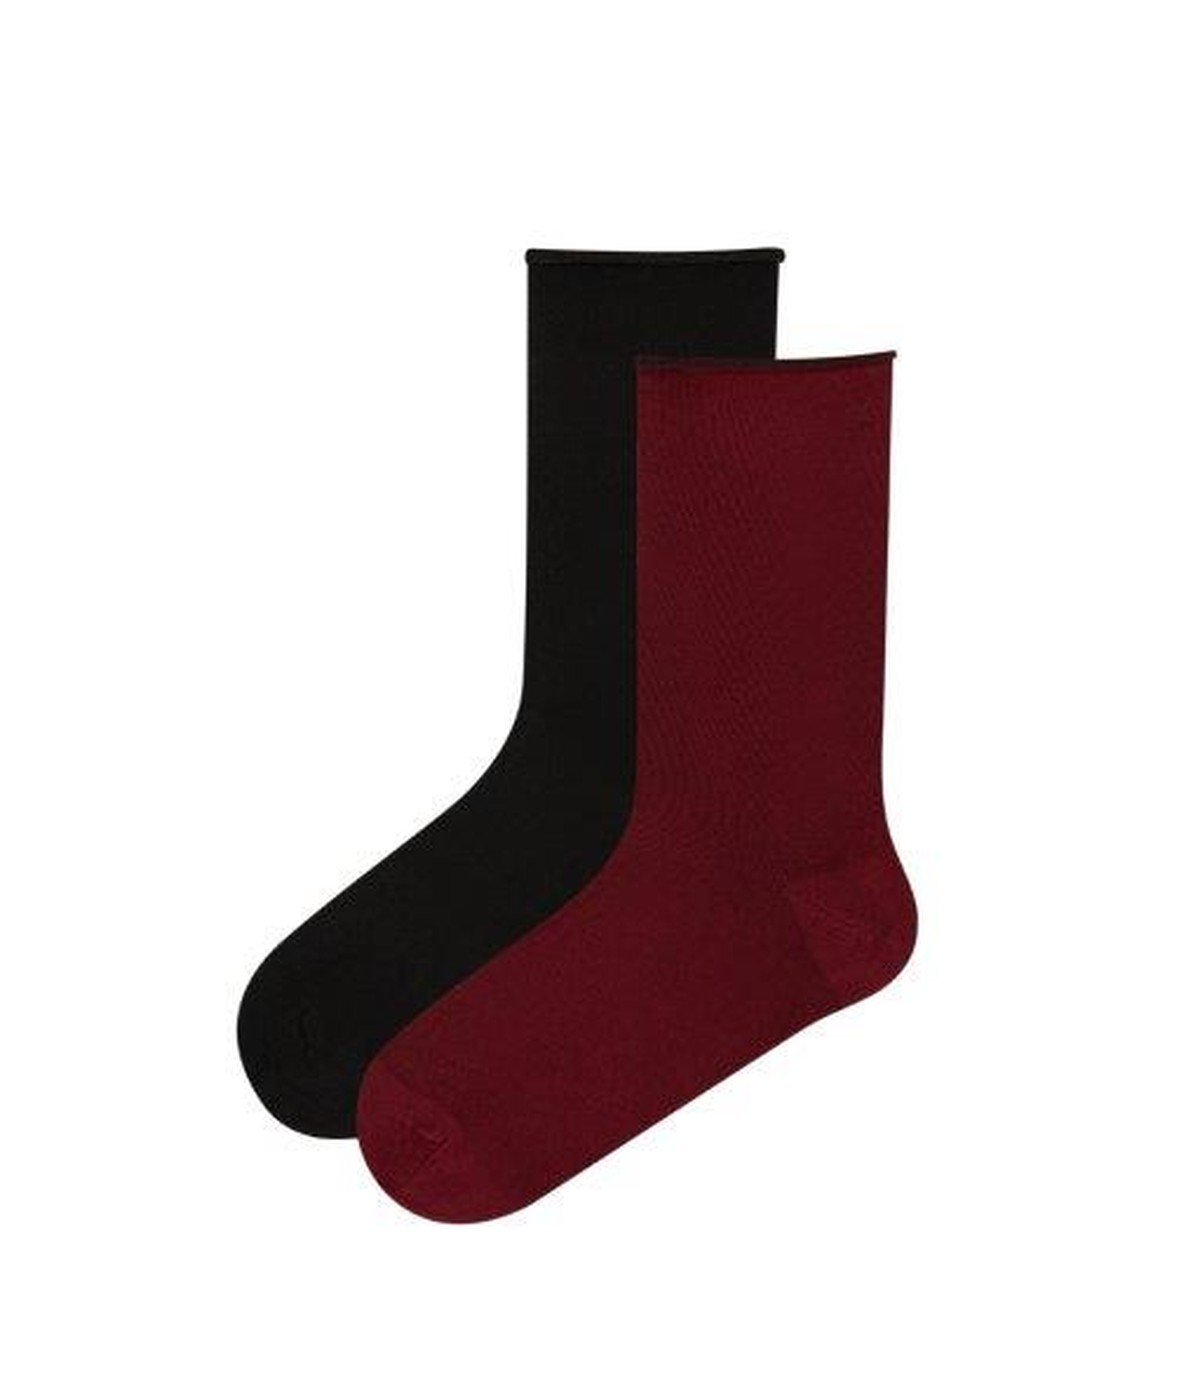 Soft 2in1 Socks